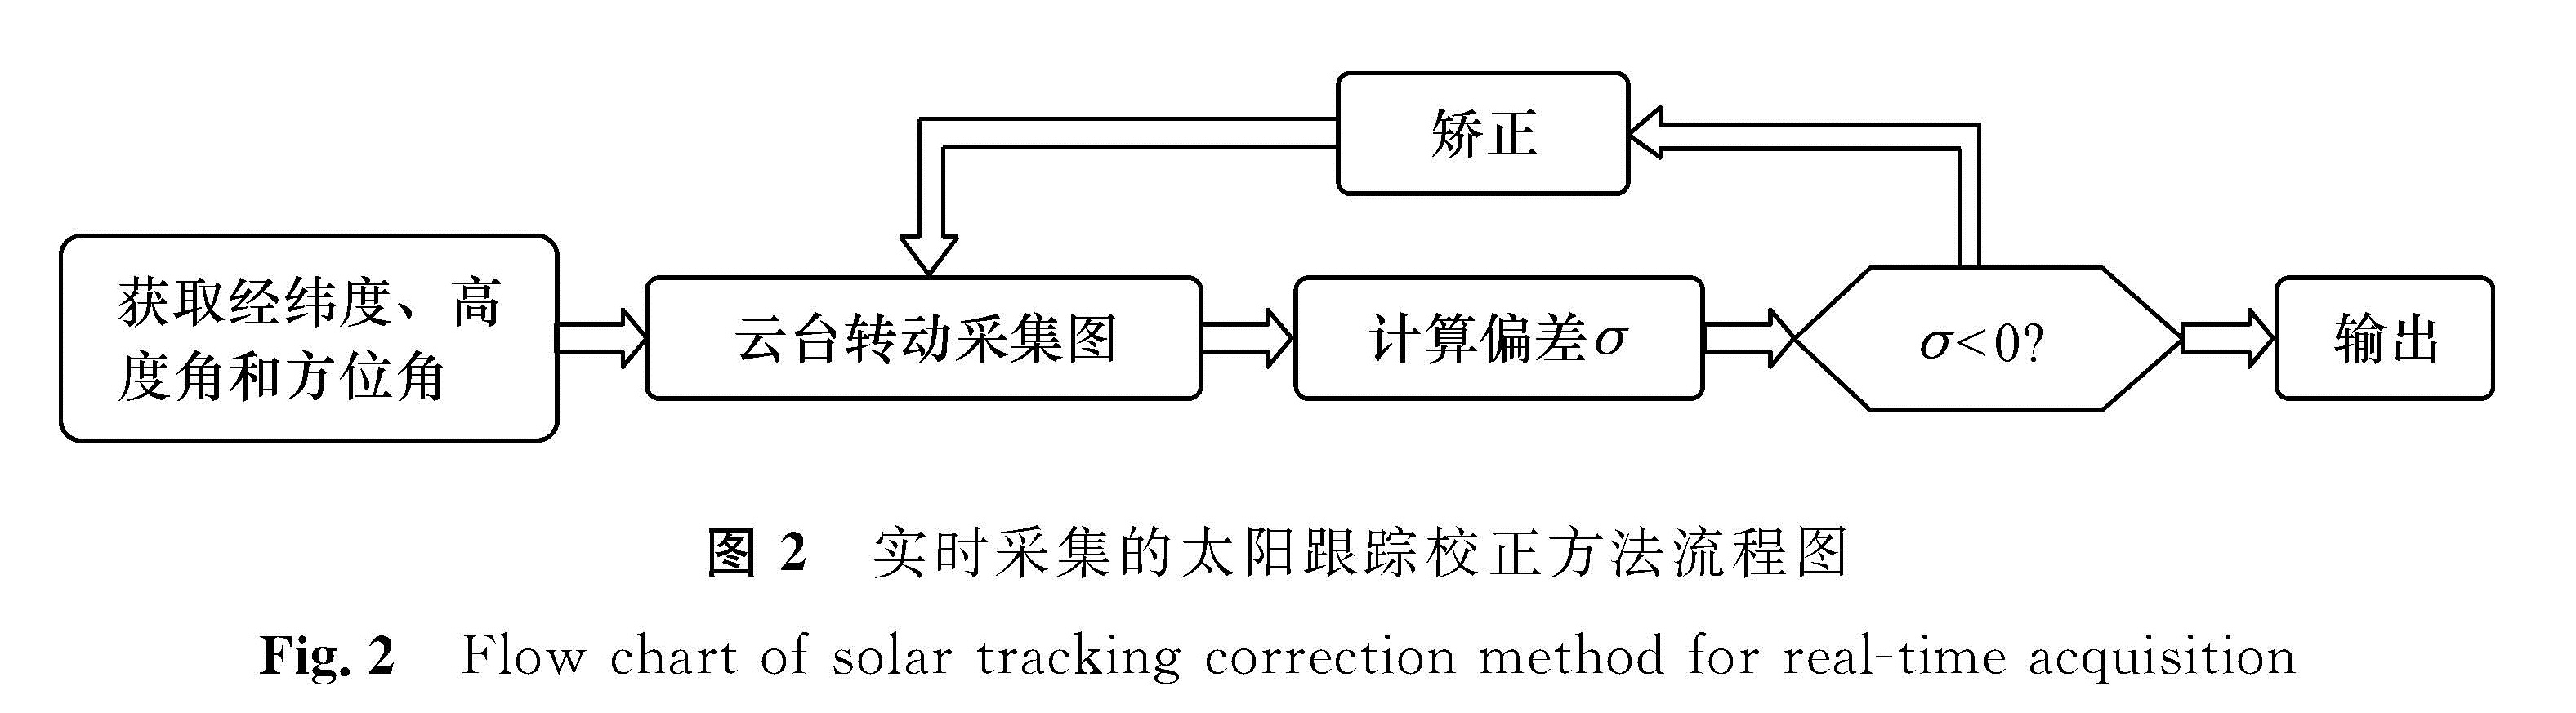 图2 实时采集的太阳跟踪校正方法流程图<br/>Fig.2 Flow chart of solar tracking correction method for real-time acquisition